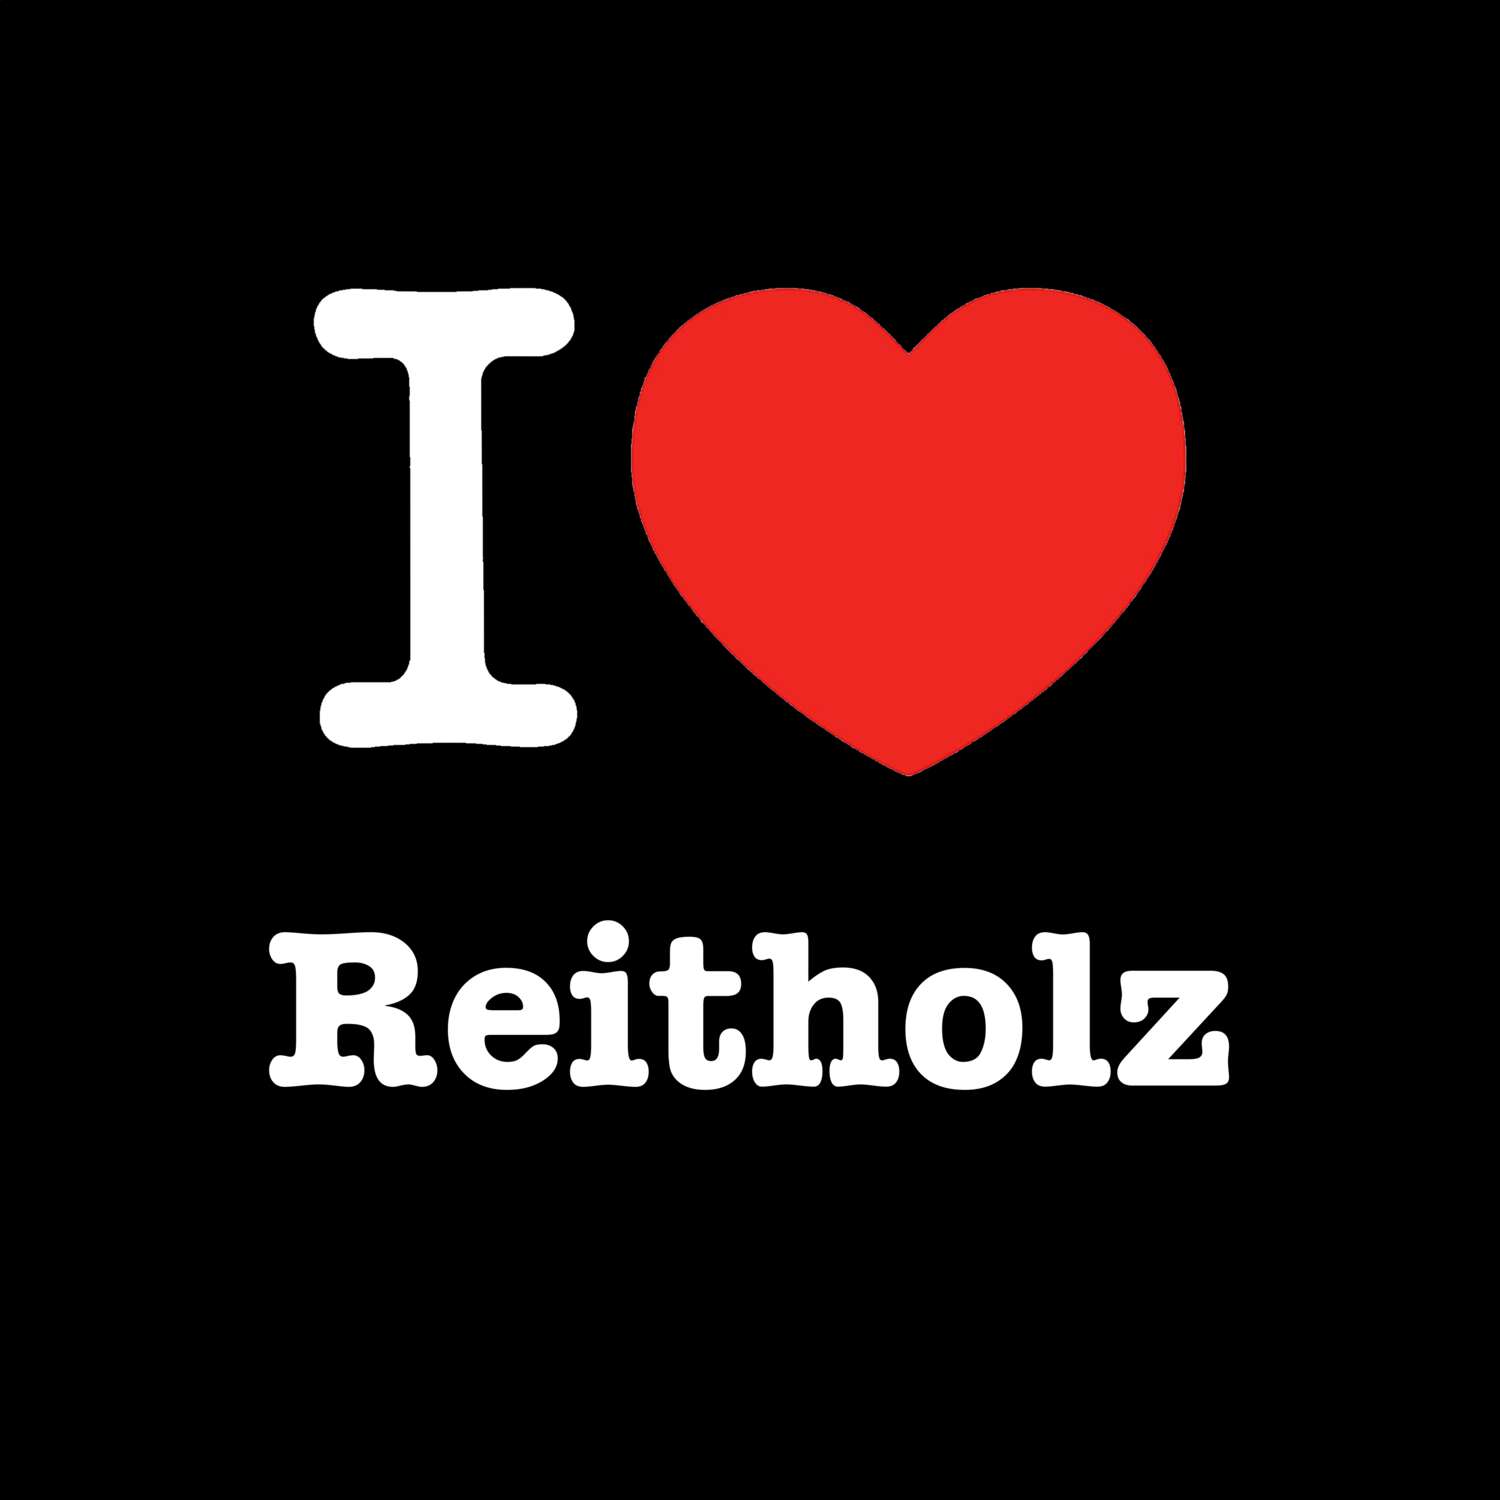 Reitholz T-Shirt »I love«